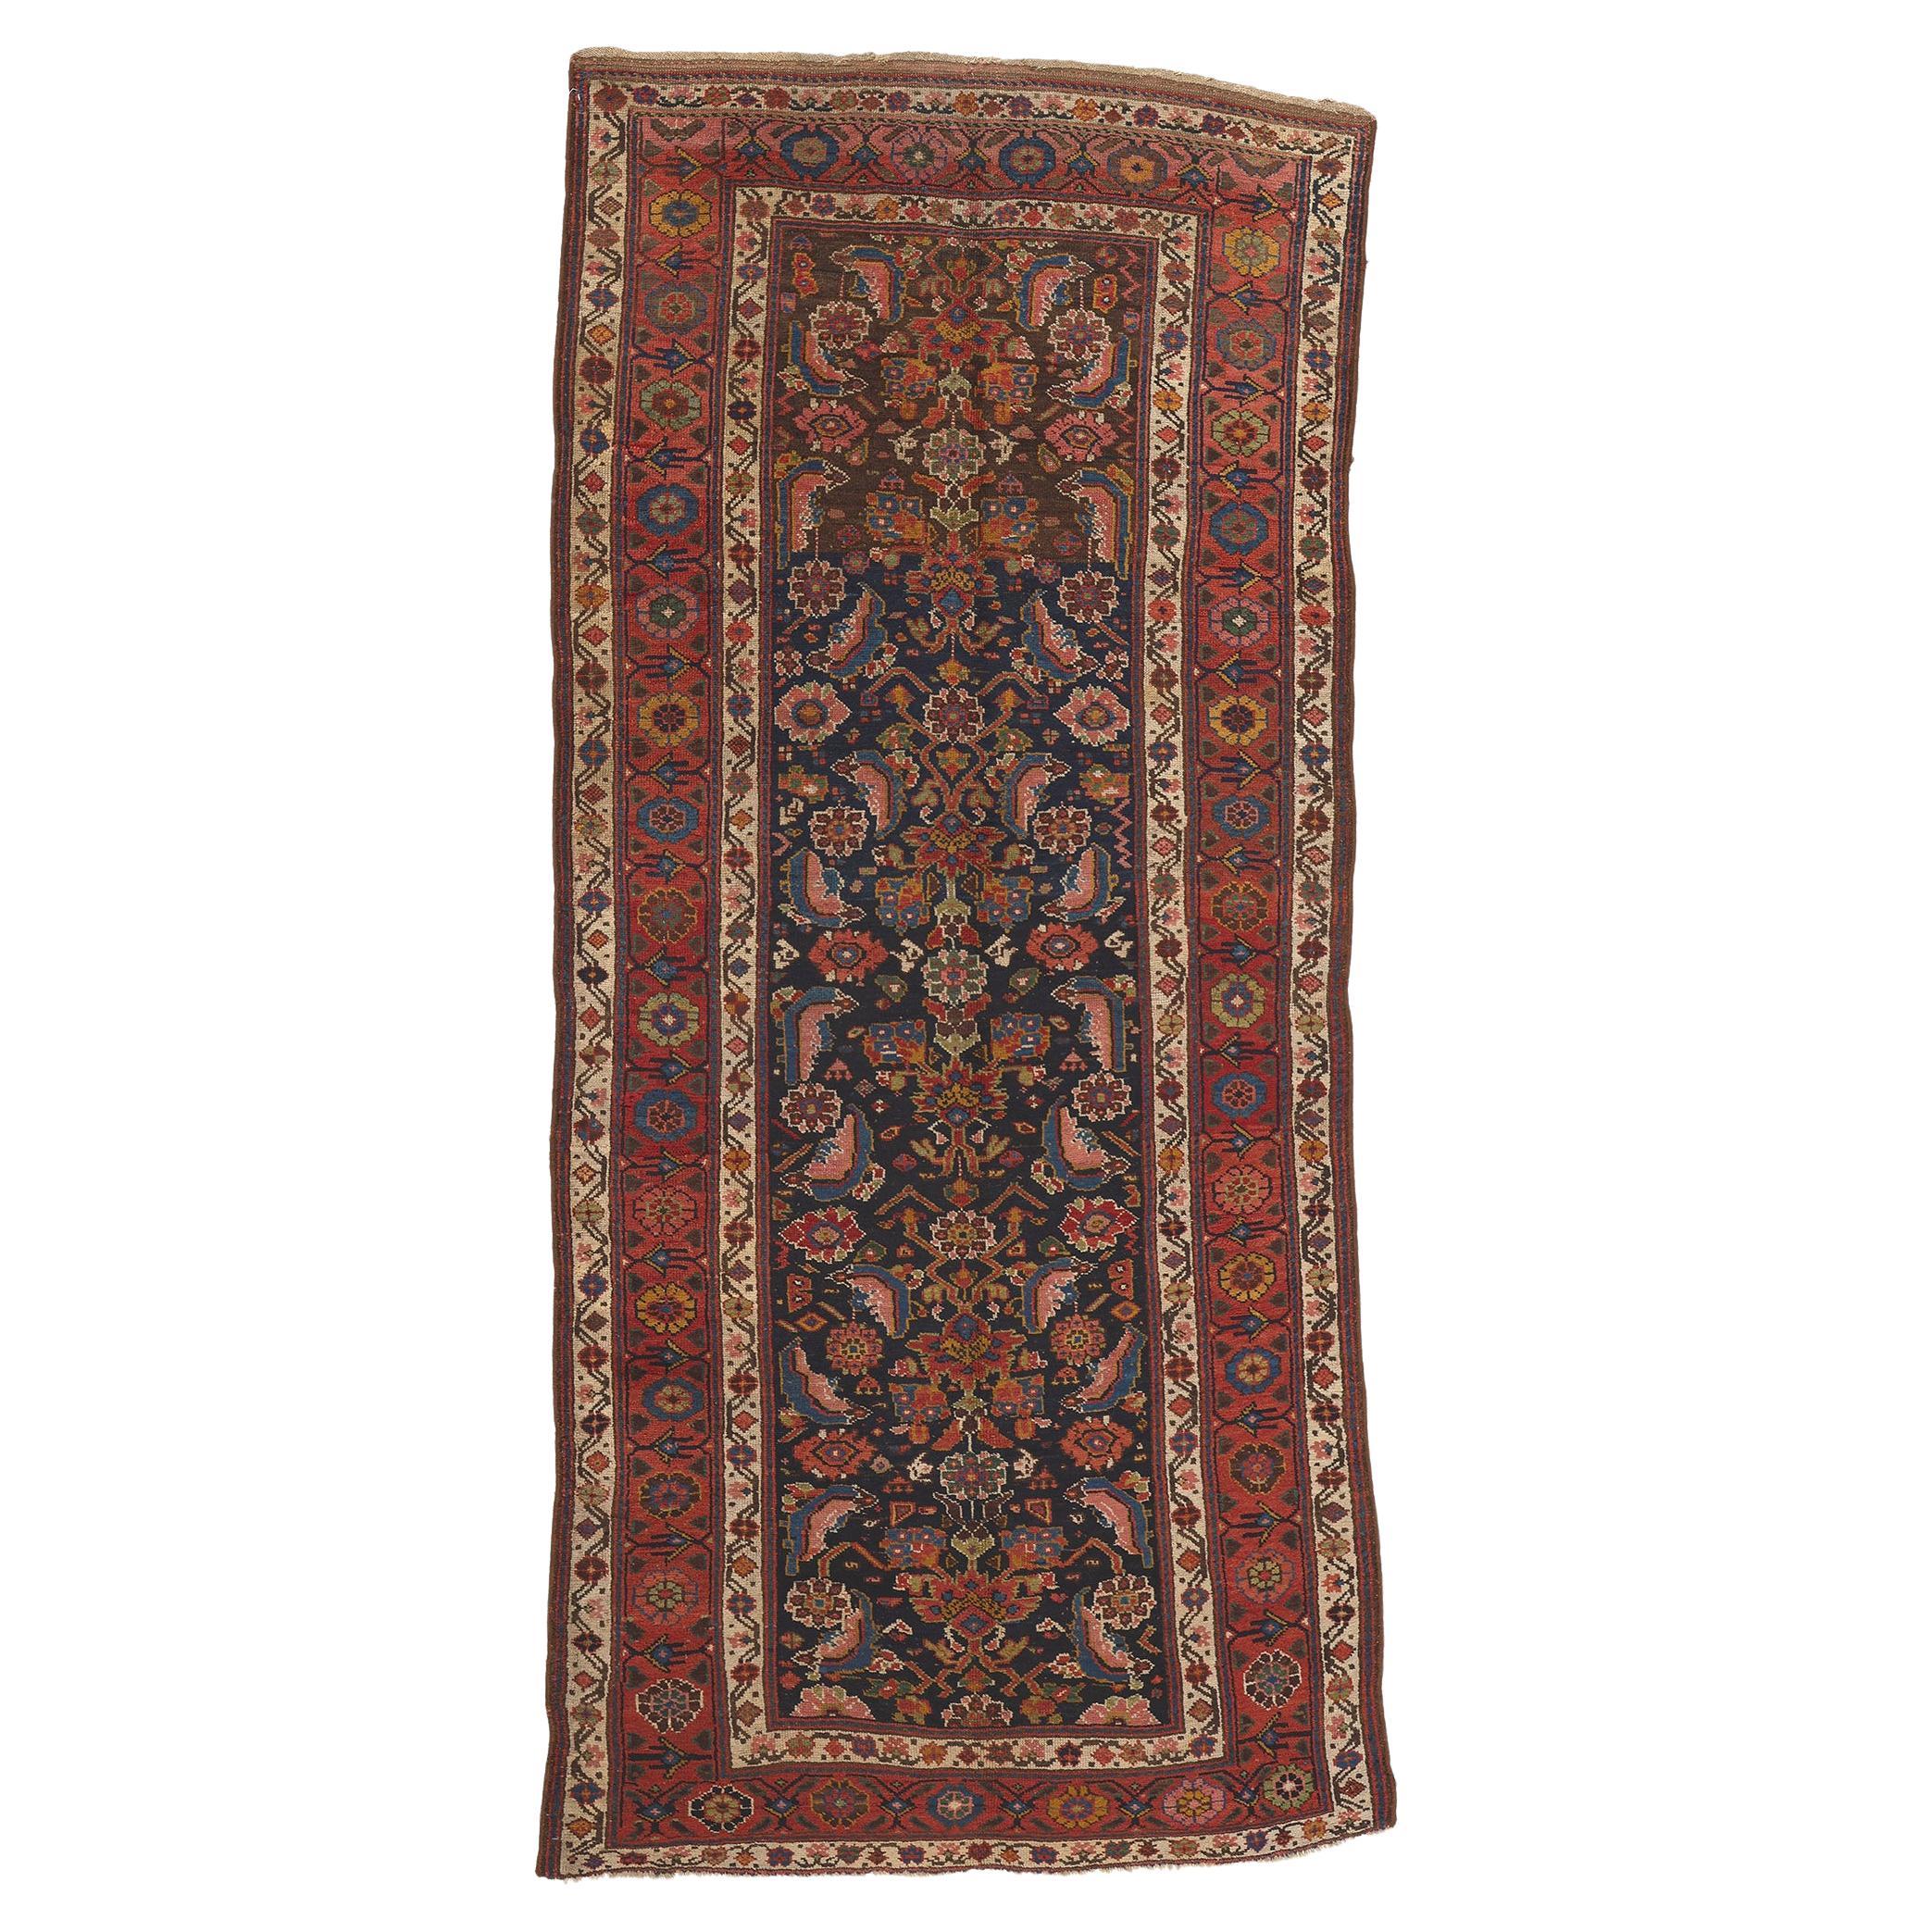 Antique Persian Kurdish Rug, Artisanal Excellence Meets Subtle Sophistication